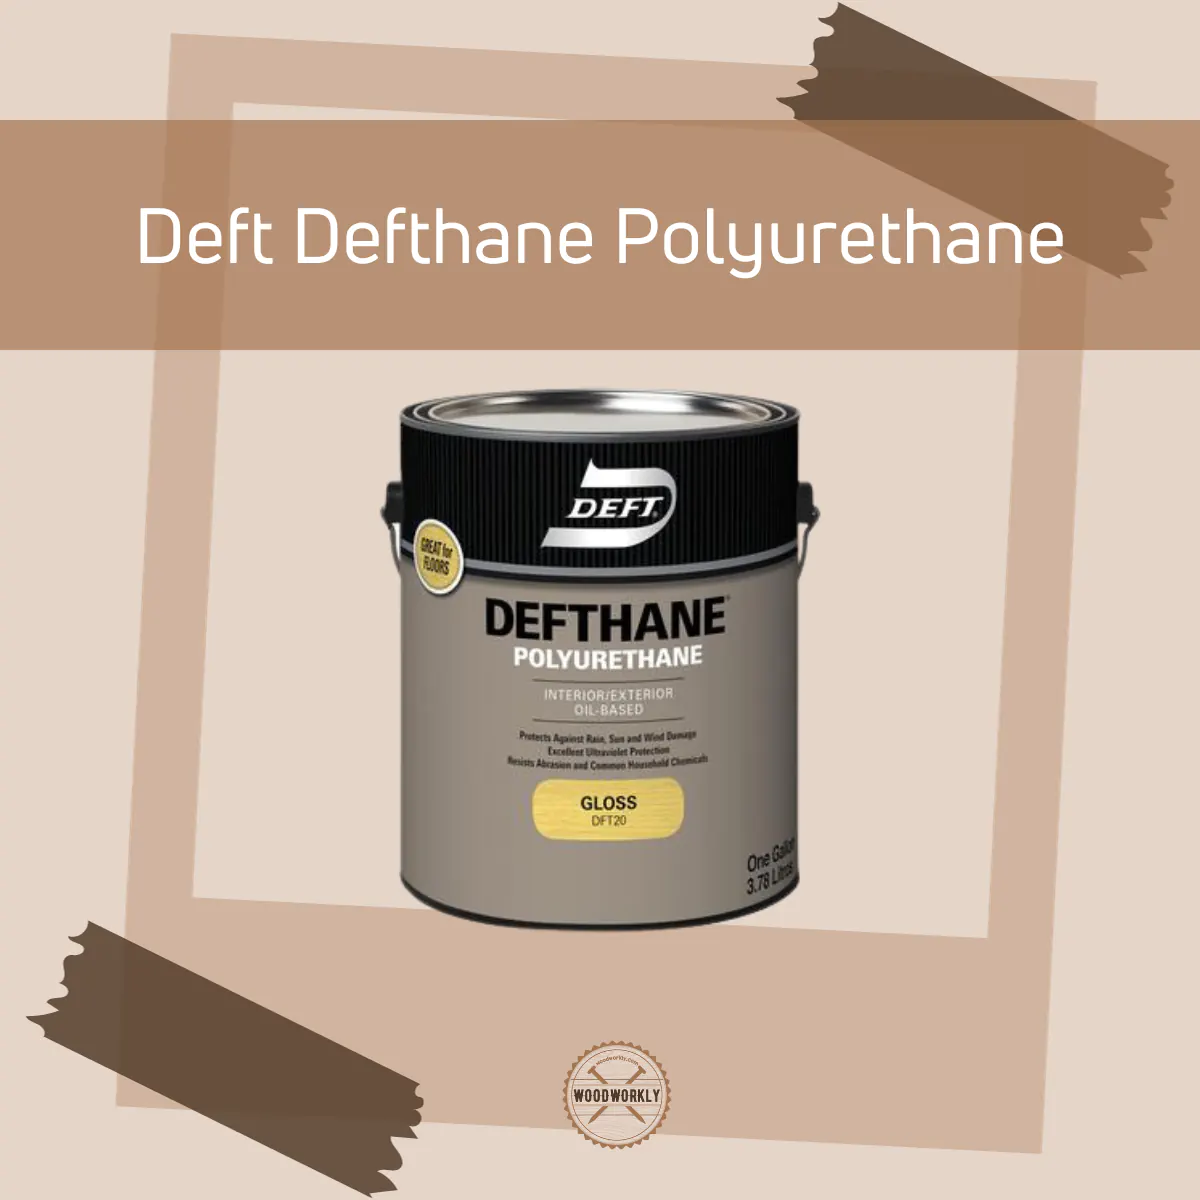 Deft Defthane Polyurethane